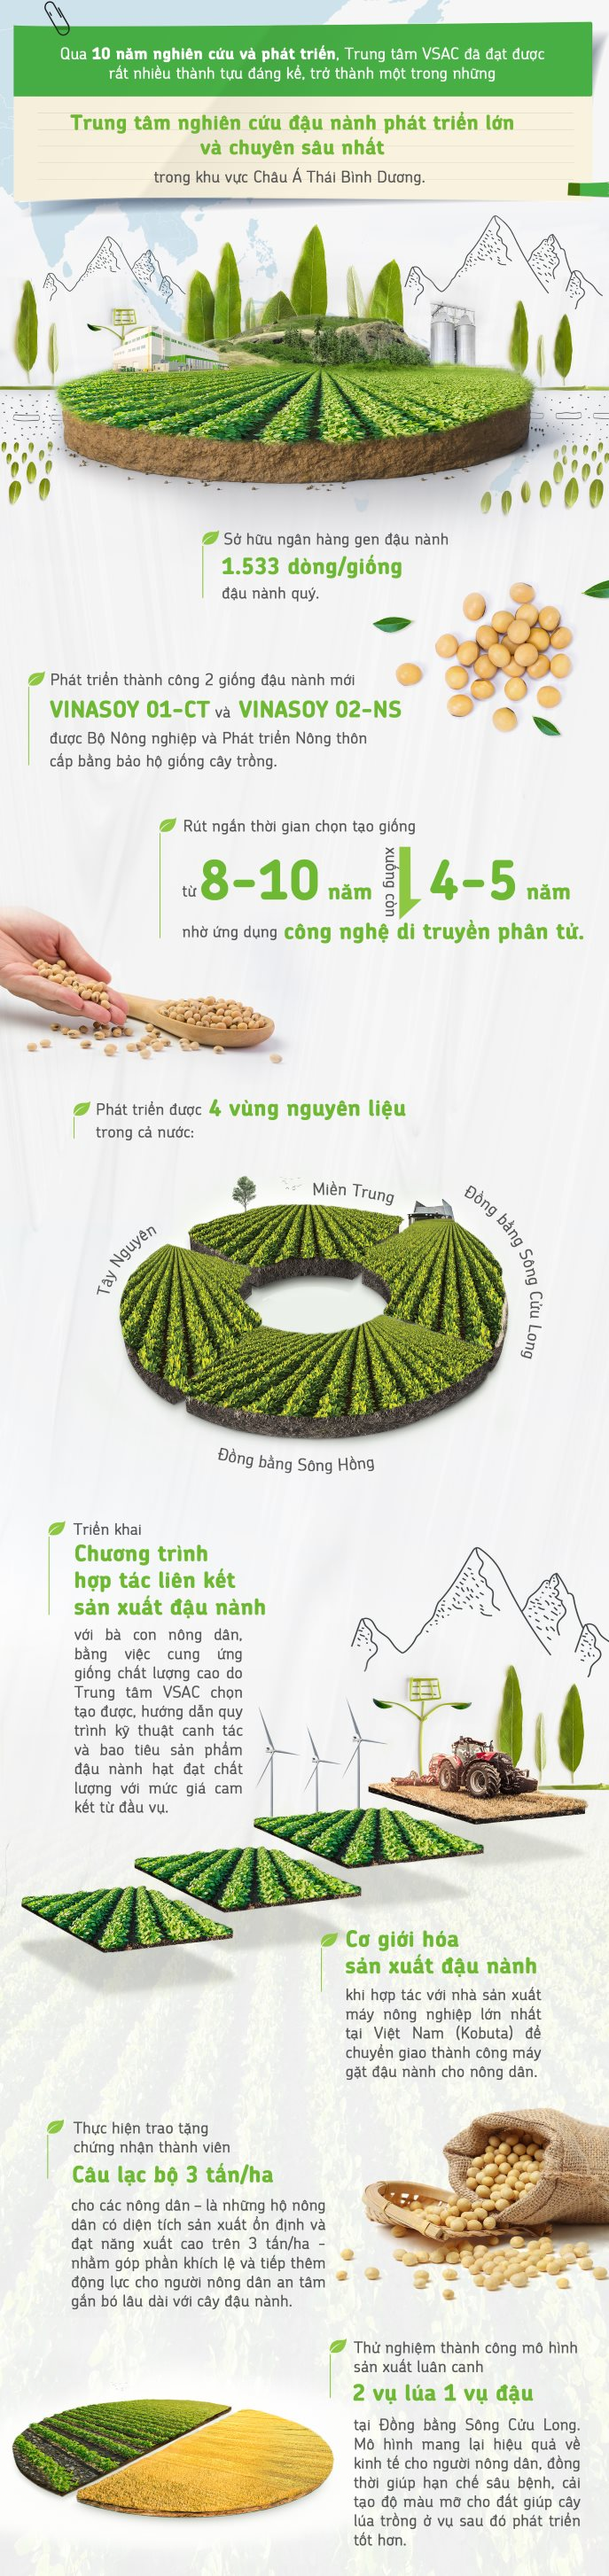 Một loại hạt giàu dinh dưỡng được ví như “thịt không xương”: Ở Việt Nam có một thương hiệu quốc gia, nỗ lực hơn 1 thập kỷ để phát triển bền vững vùng nguyên liệu - Ảnh 3.